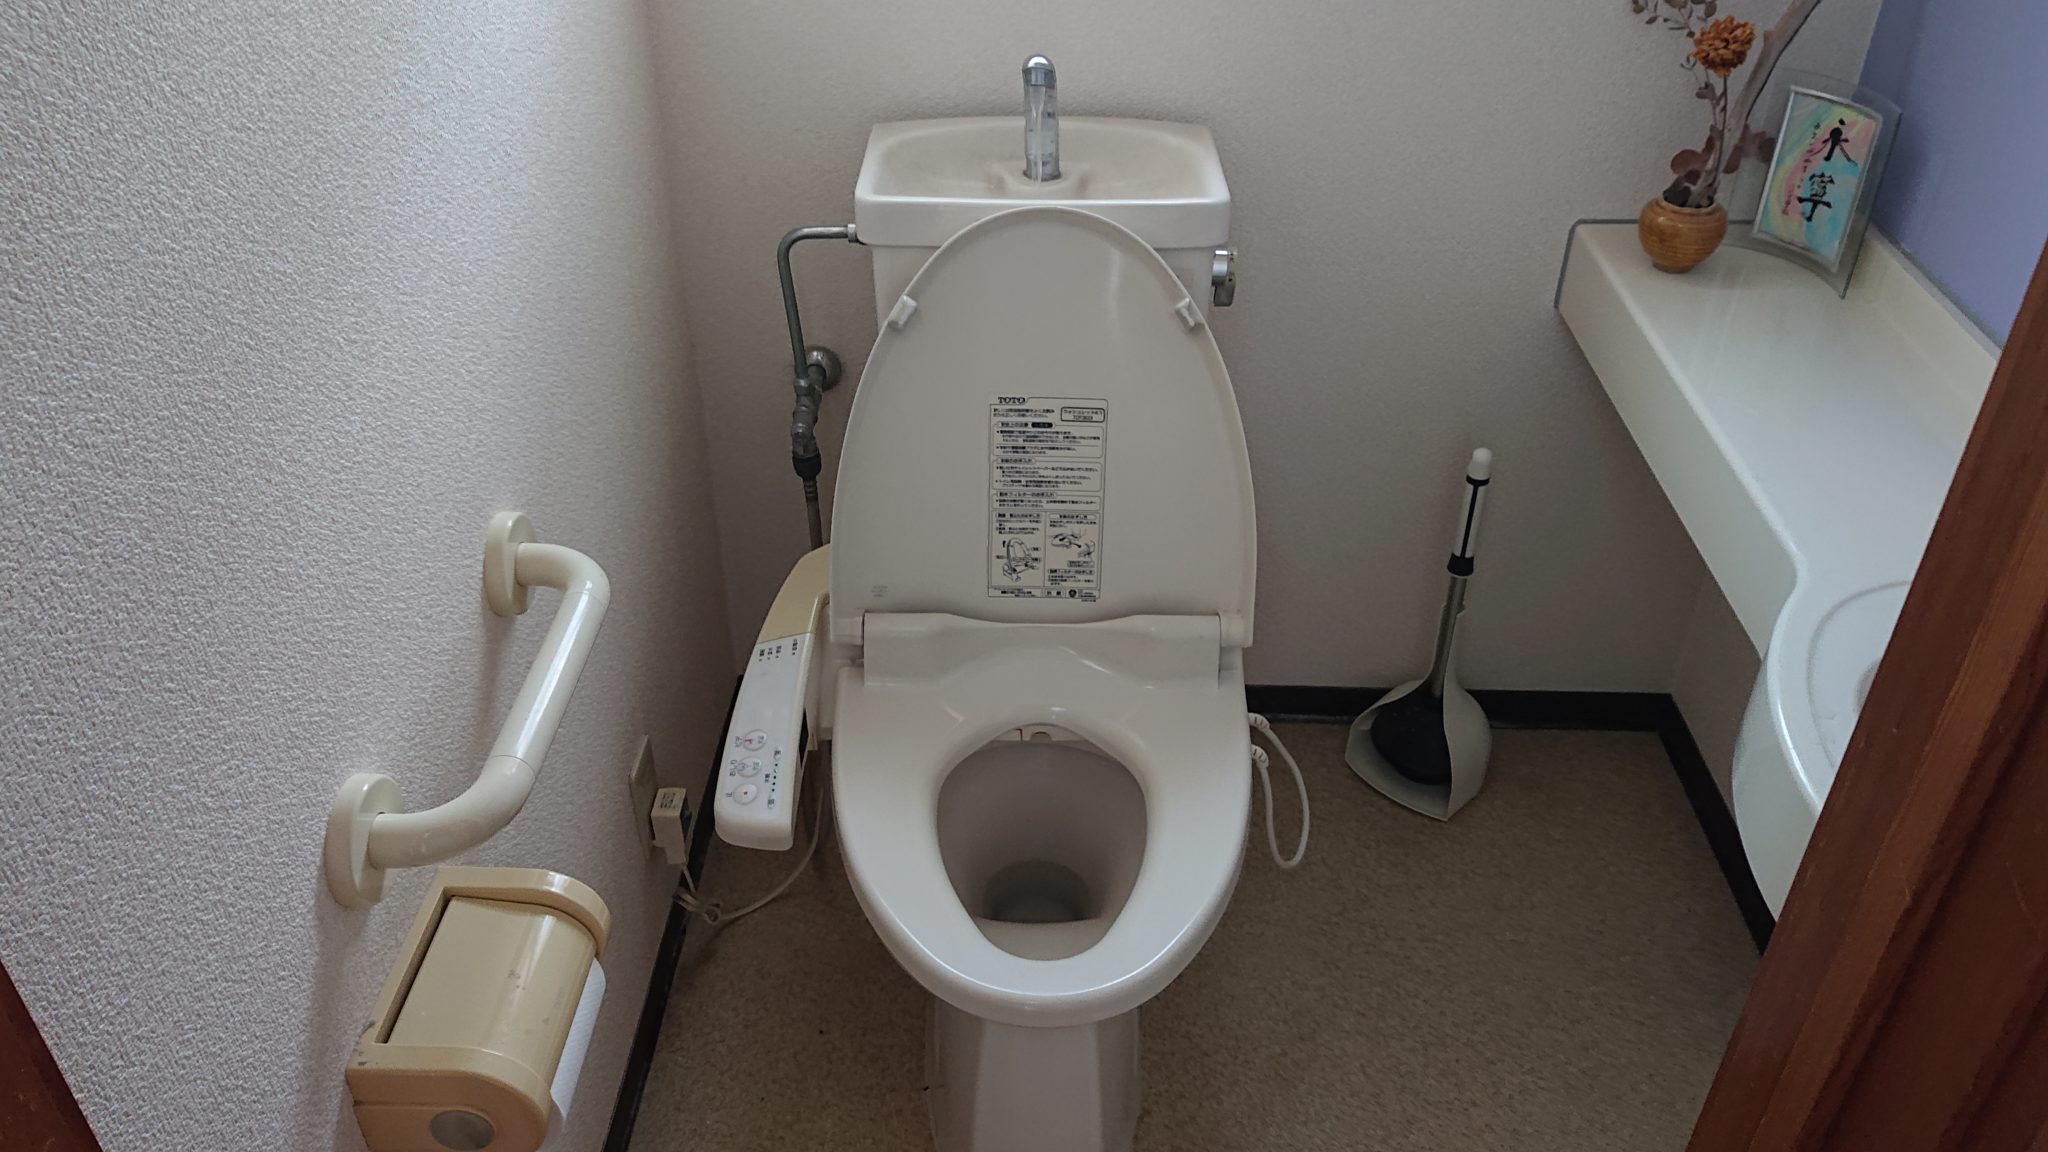 トイレつまり｜トイレの便器に生理用品を誤って流してしまった！【熊本市東区の事例】 熊本水道救急